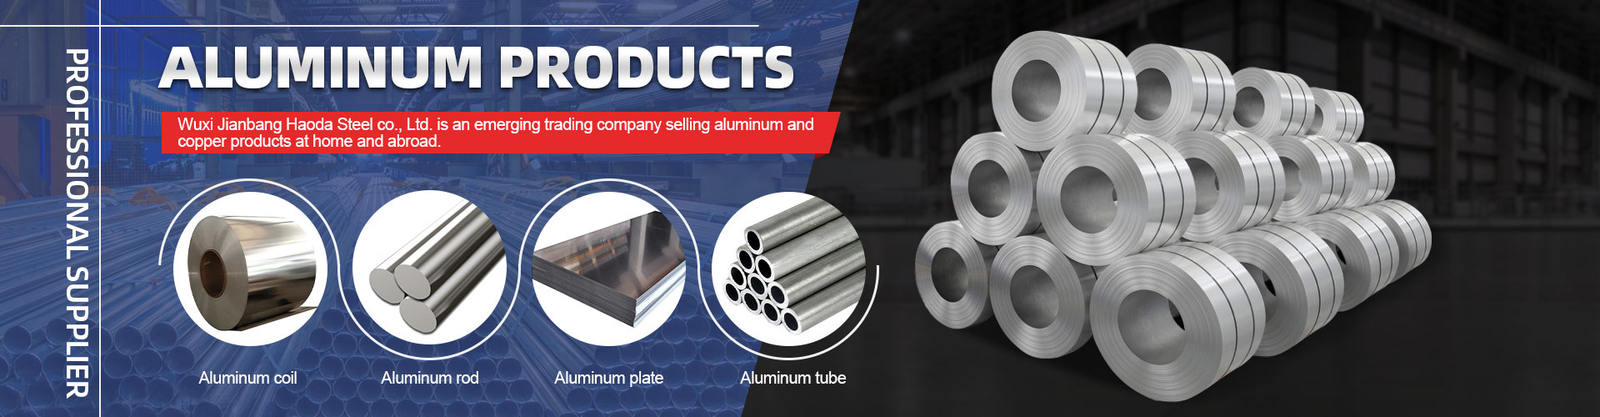 kualitas Gulungan Kumparan Aluminium pabrik